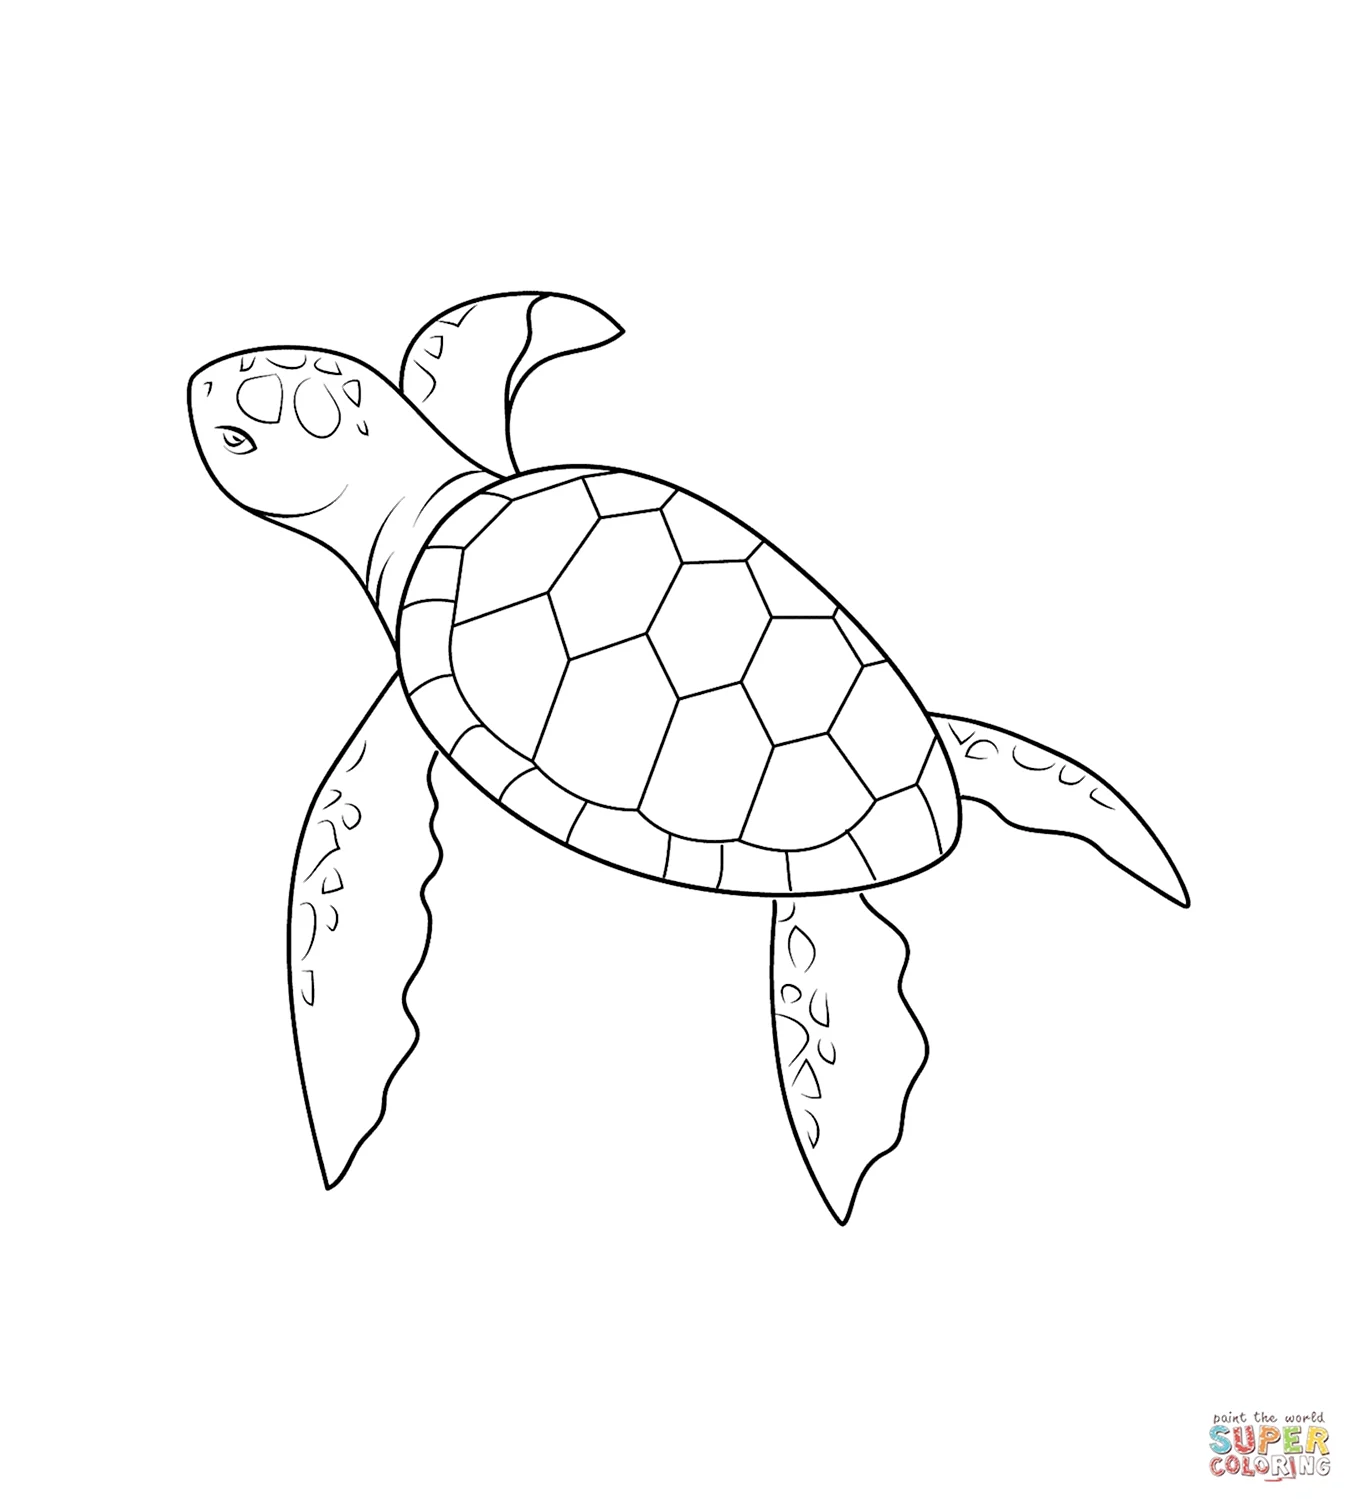 Черепаха раскраска для детей. Для срисовки